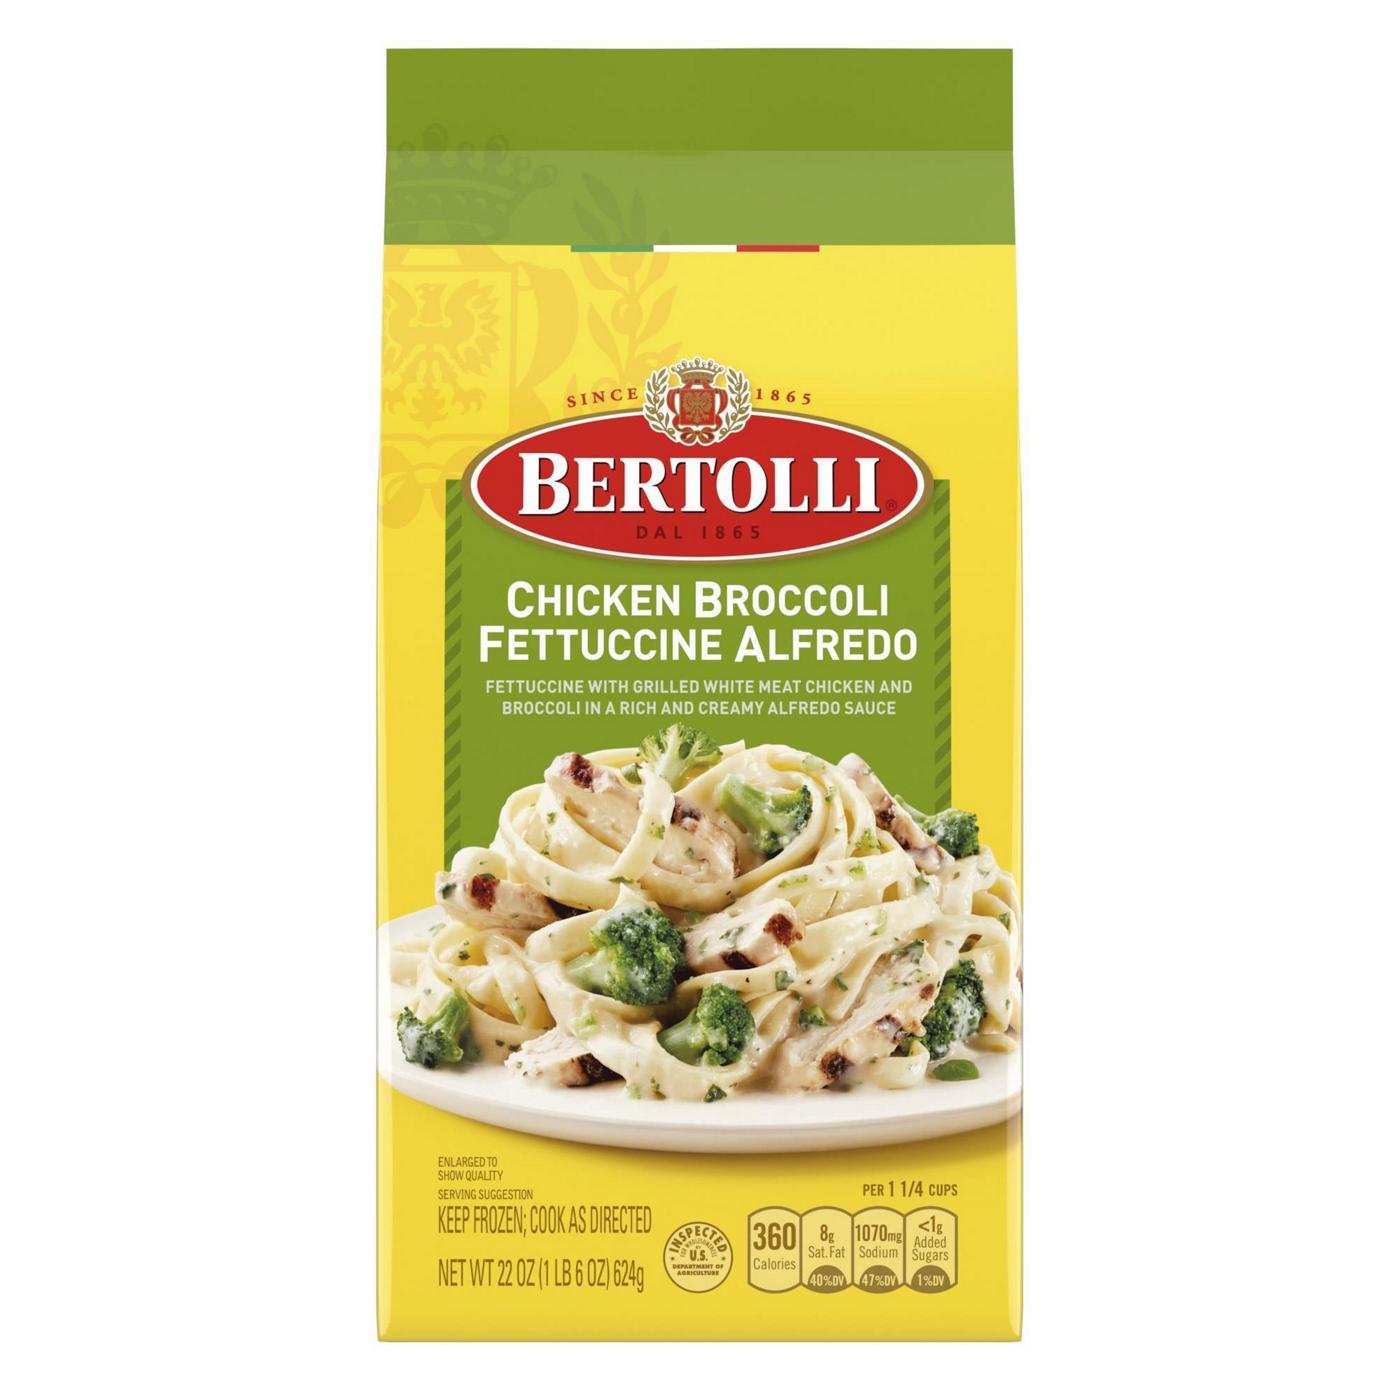 Bertolli Frozen Chicken Broccoli Fettuccine Alfredo; image 1 of 5